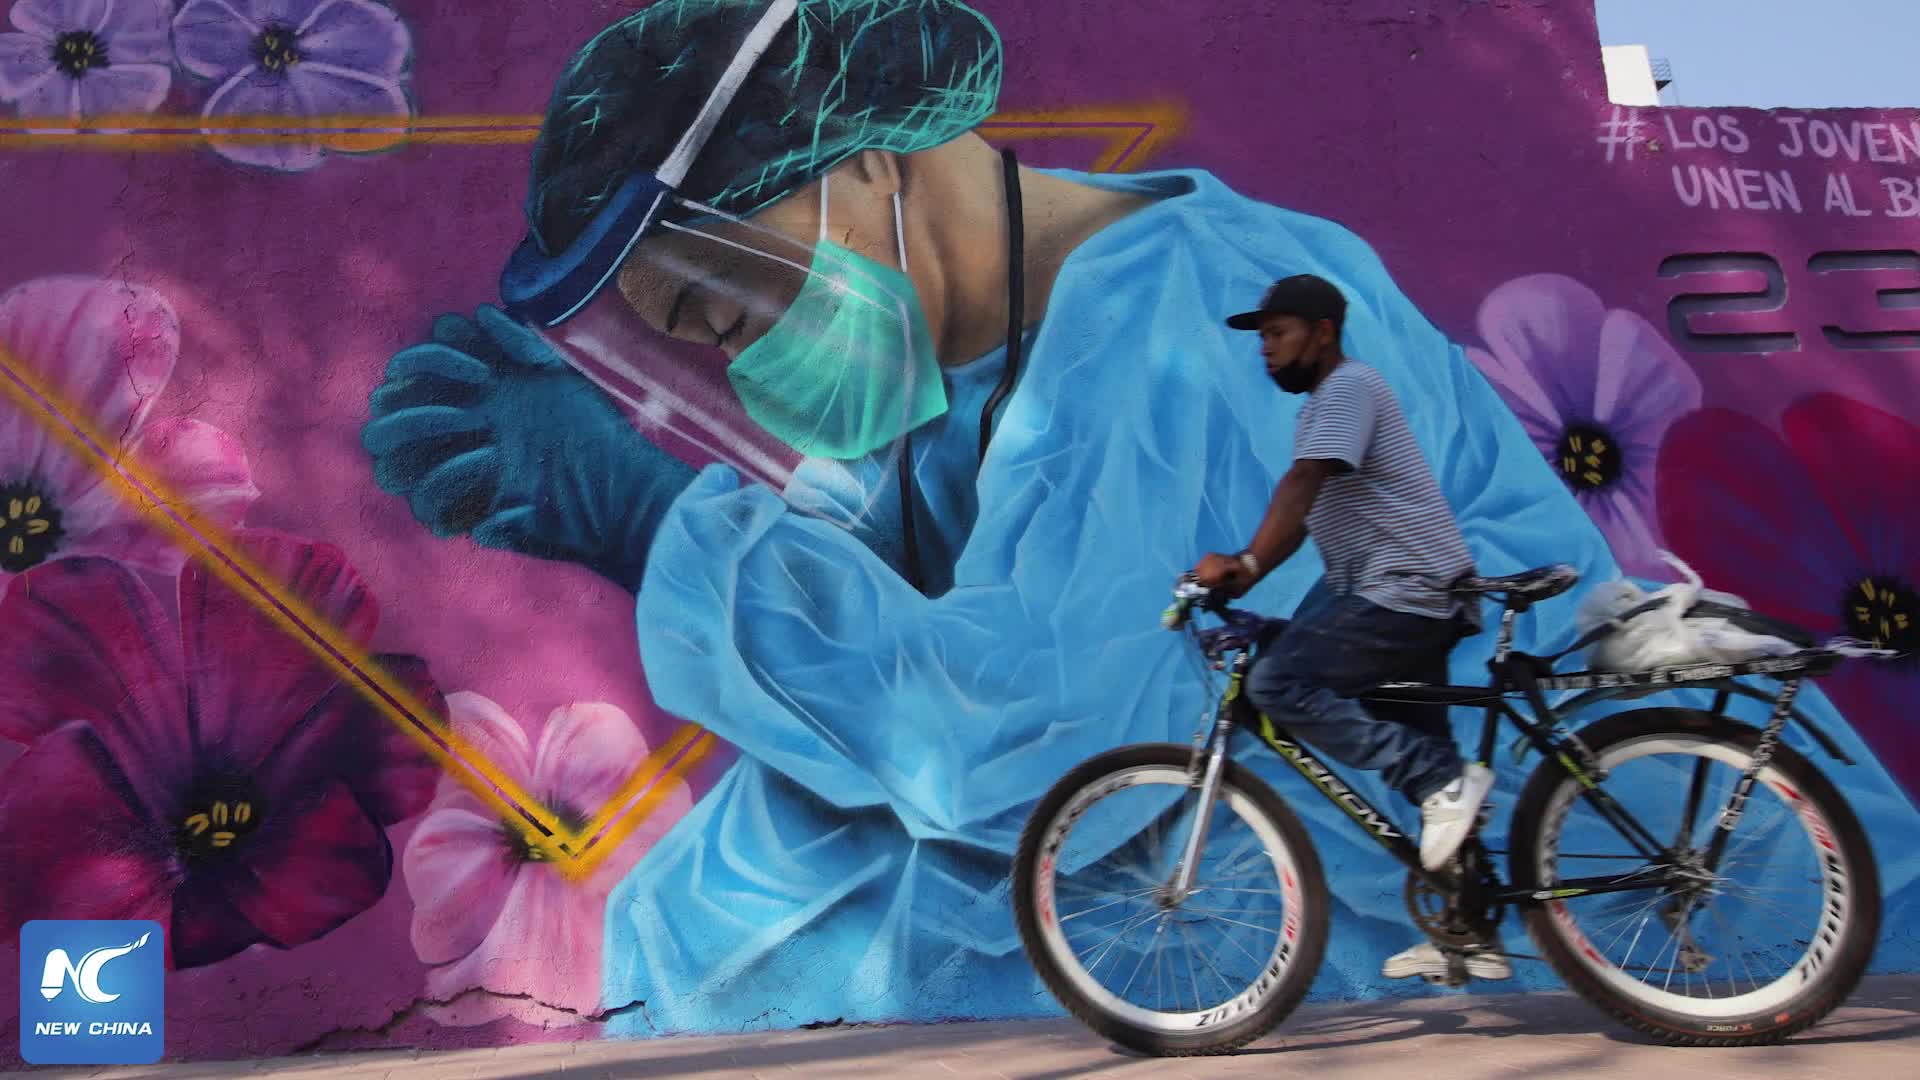 ESPECIAL: La vida en tiempos de pandemia se ilumina con grafitis de artistas latinoamericanos